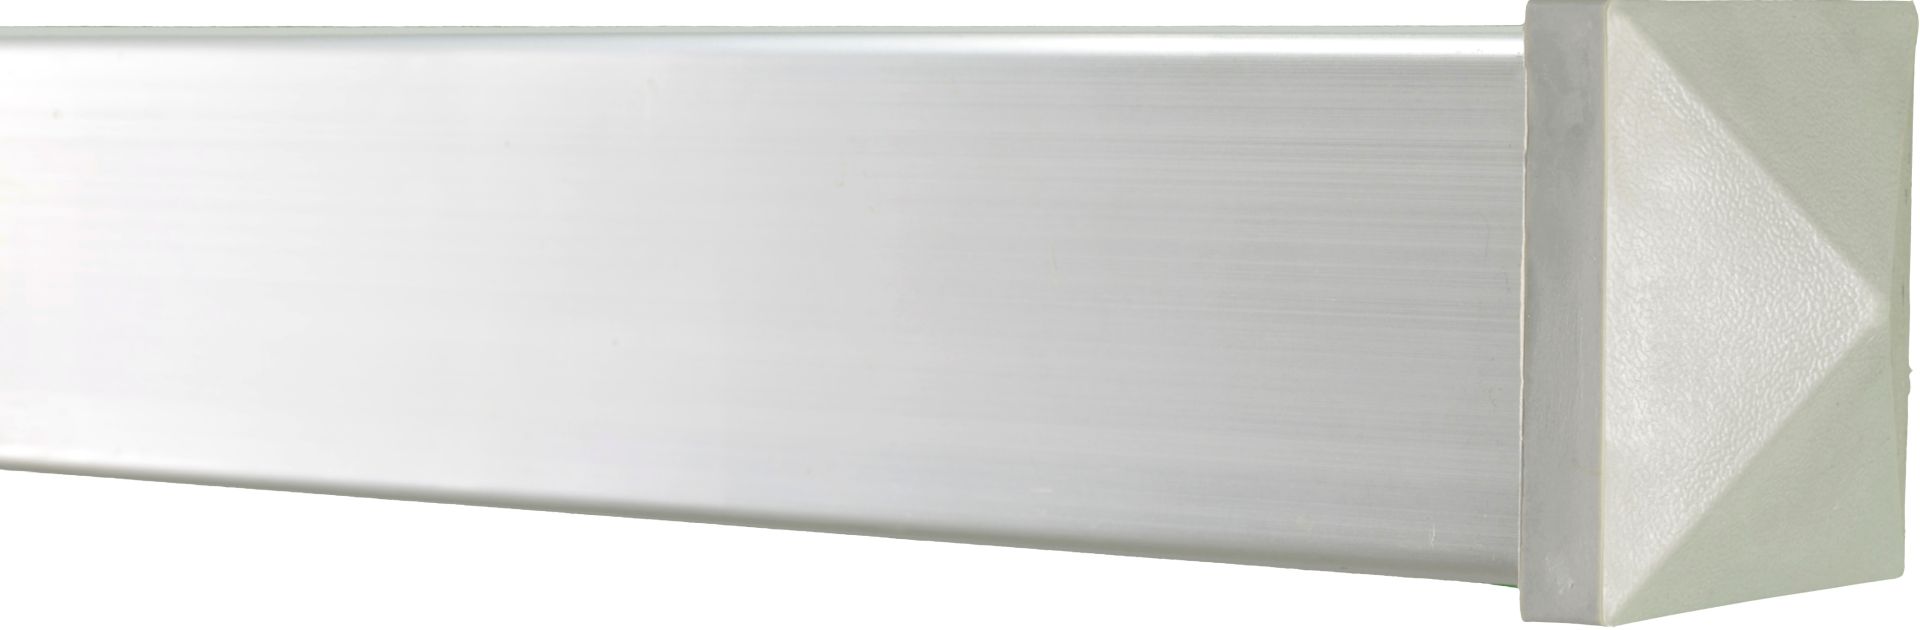 WPC Pfostenkappe für JINAN- und DALIAN Serie 7,4 x 7,4 cm grau